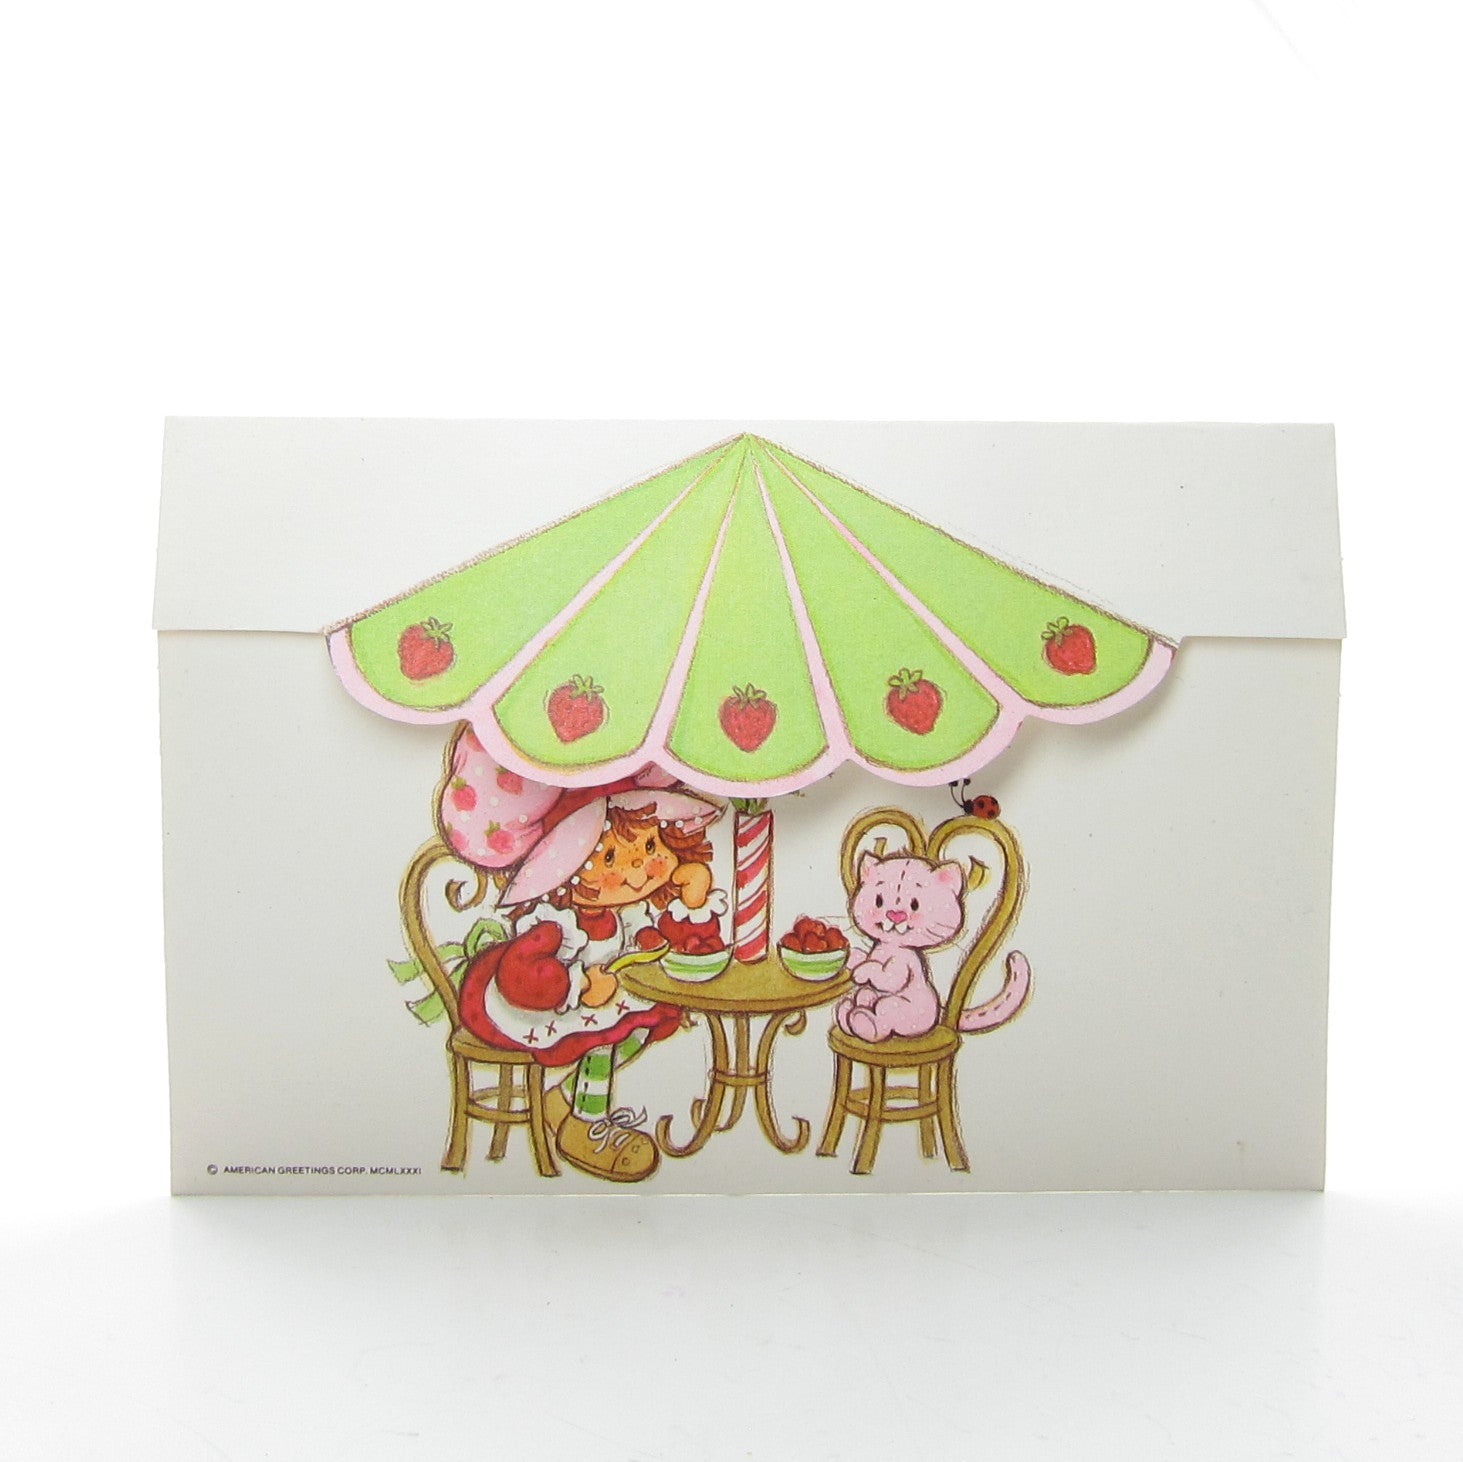 Vintage Strawberry Shortcake postalette with Custard under umbrella